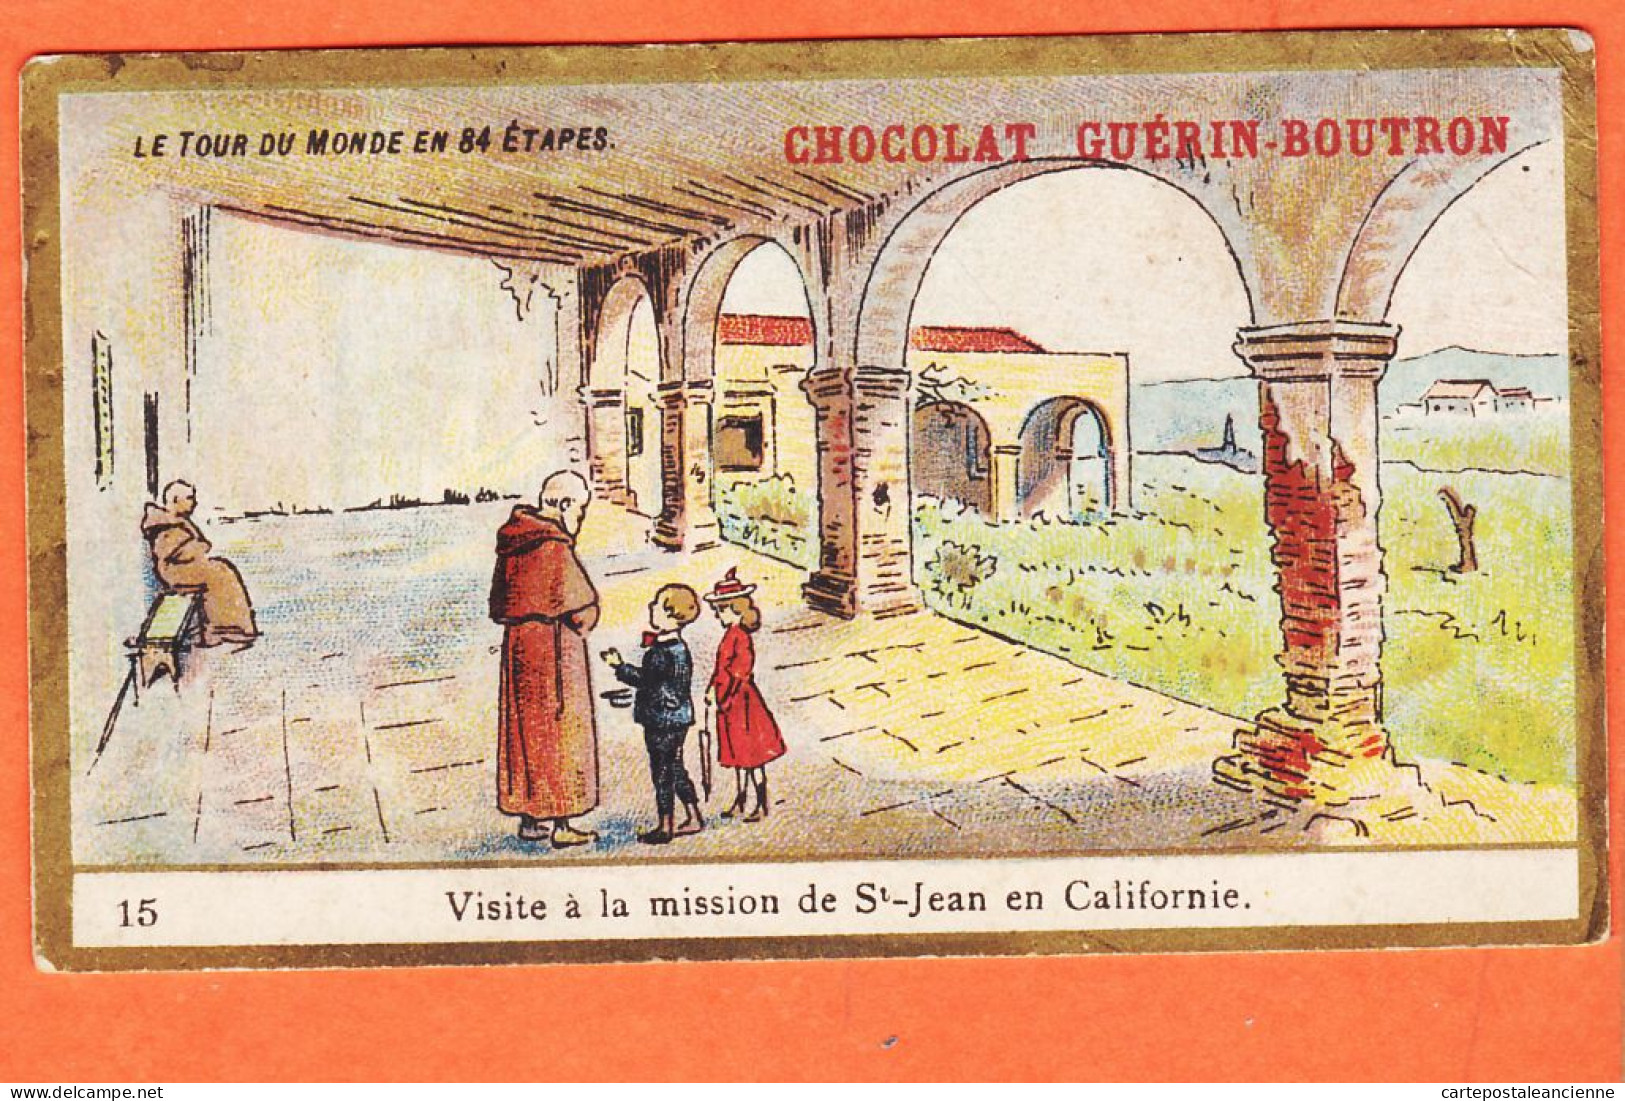 24831 /⭐ Chromo Chocolat GUERIN-BOUTRON 15 ◉ Tour Monde 84 étapes CALIFORNIE Visite Mission SAINT-JEAN ◉ PARIS Rue MAROC - Guerin Boutron